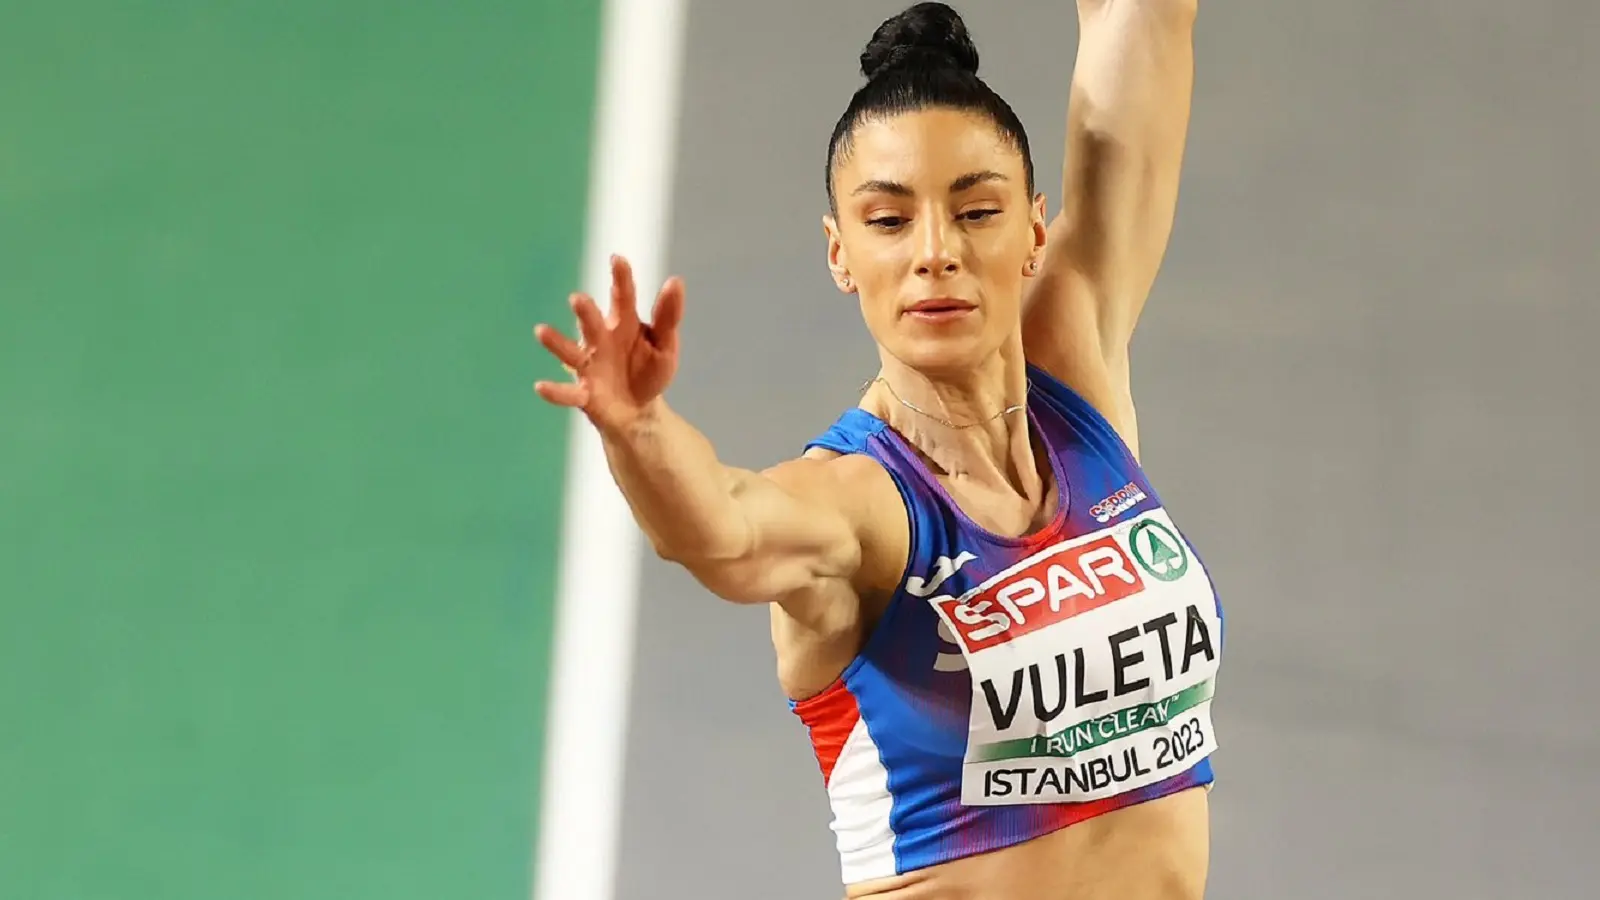 Ivana Vuleta_European Athletics-6404d5347bb9d.webp